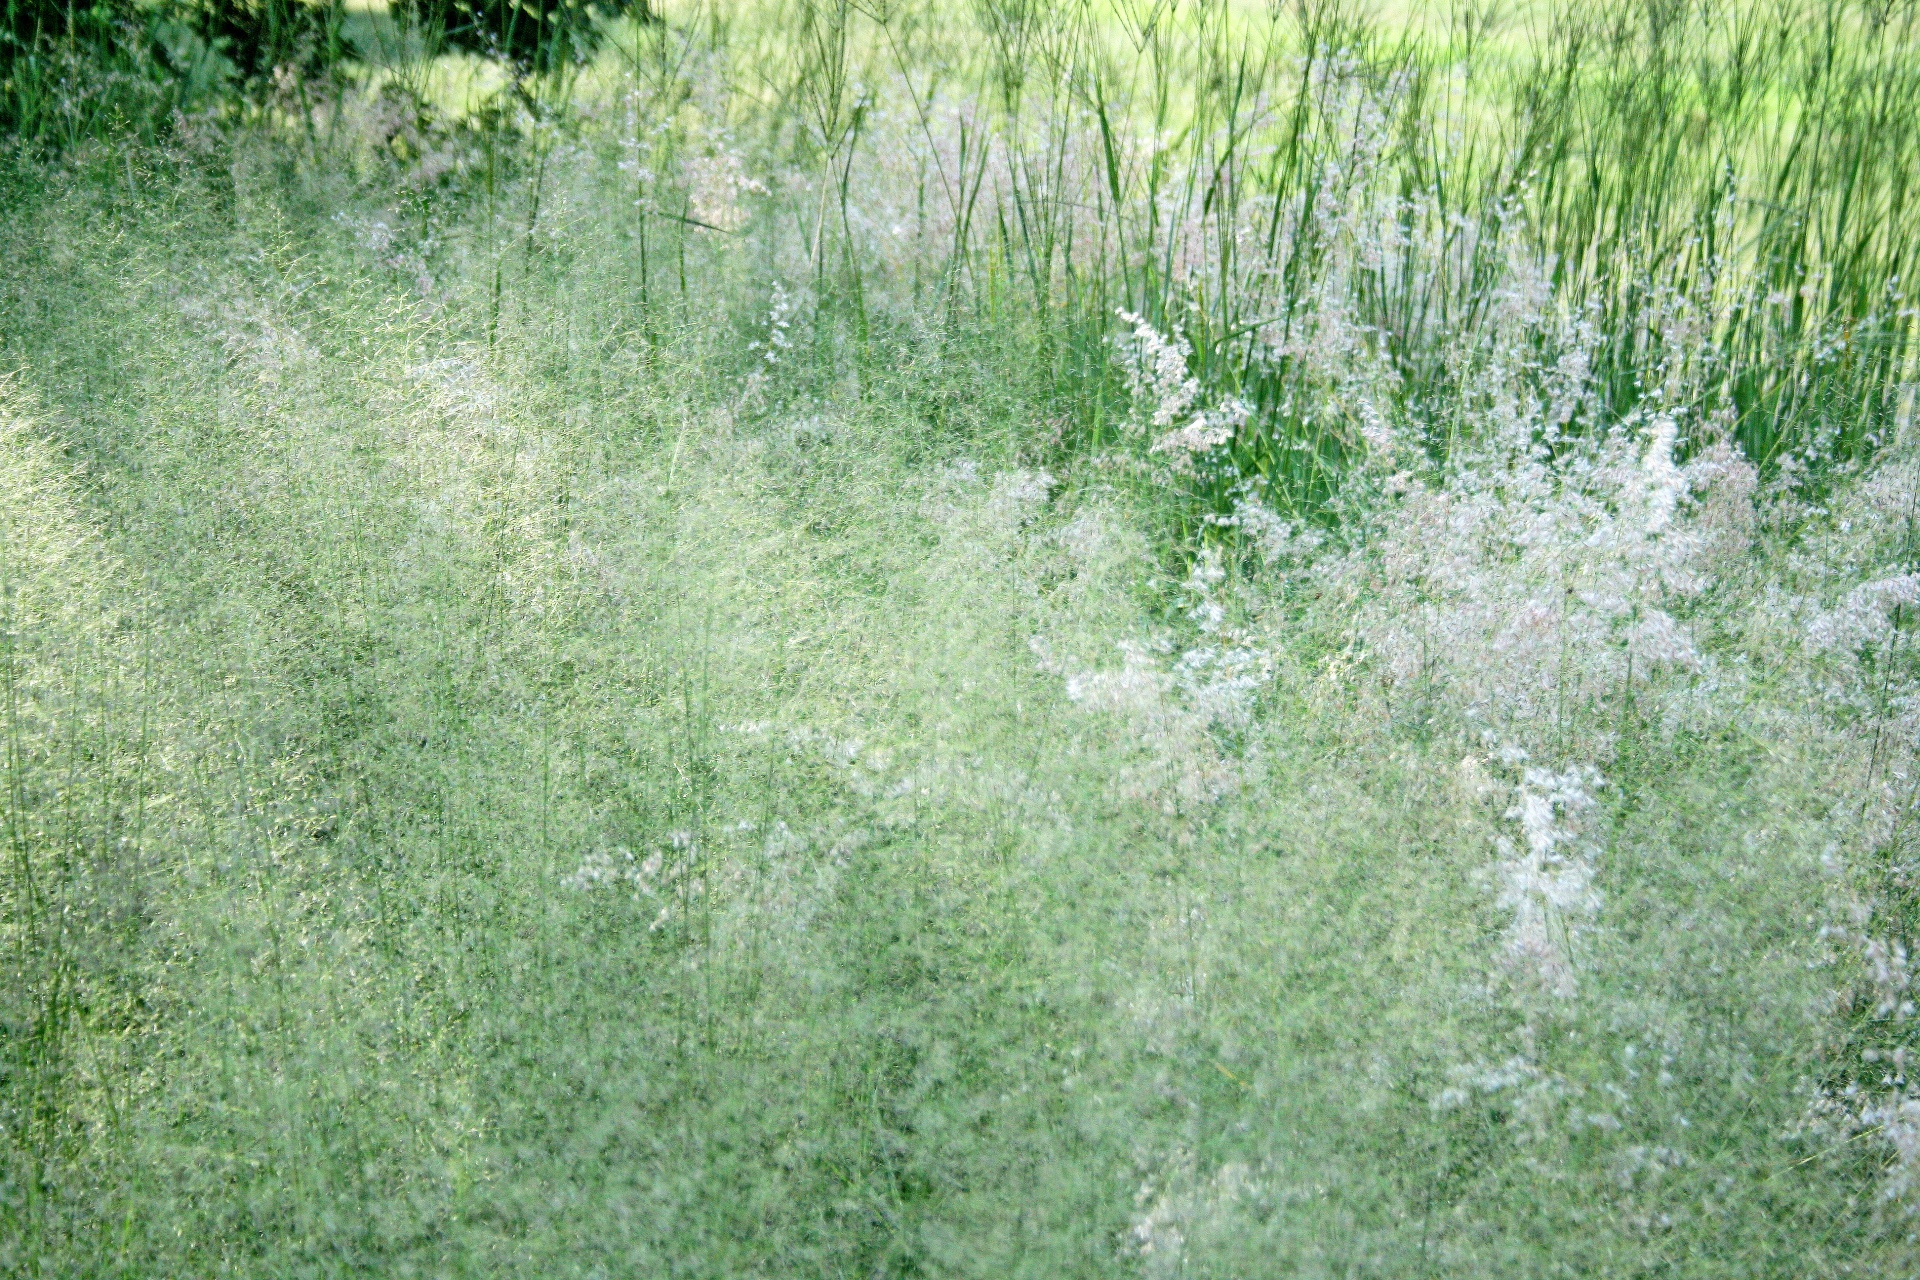 Ciuffi bianchi su erba verde